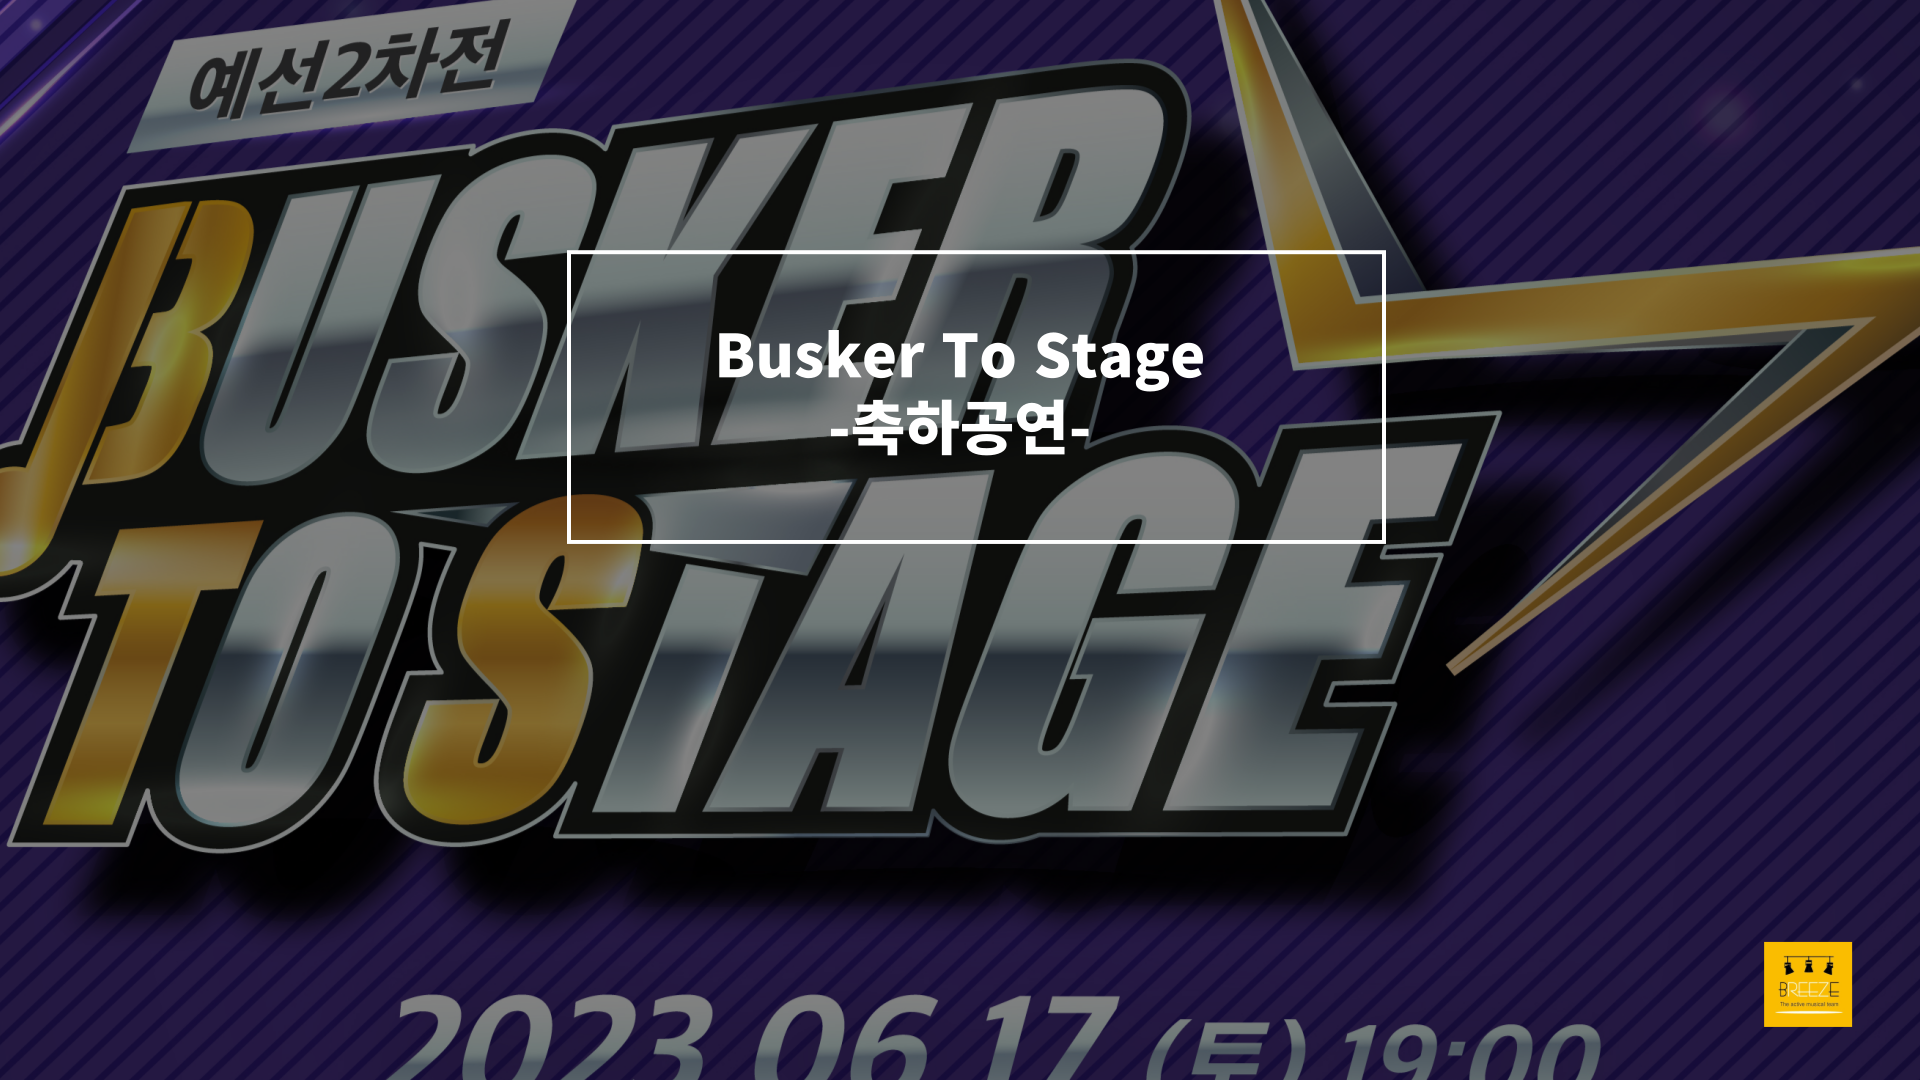 20230617 경상남도 주관 Busker To Stage 축하공연 <브리즈 갈라콘서트>